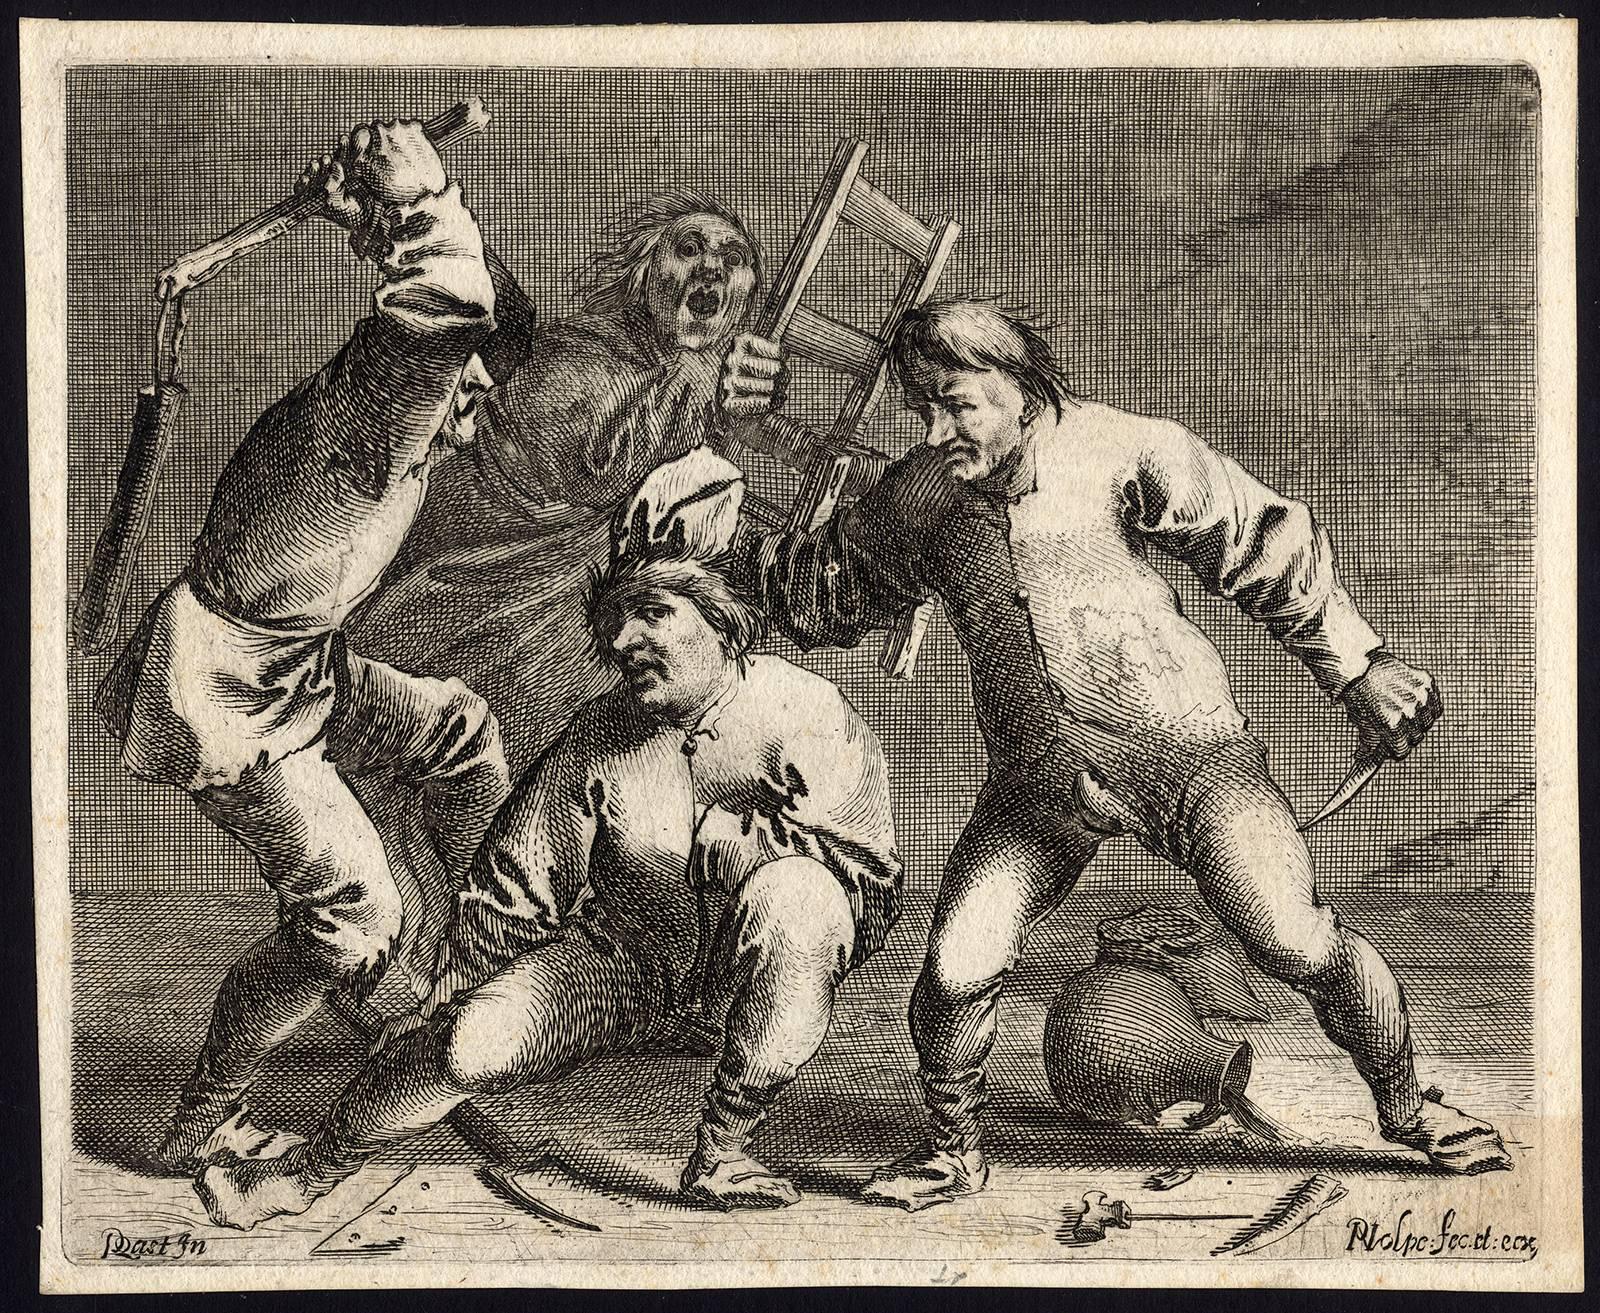 Pieter Jansz Quast Figurative Print -  Untitled - Fighting peasants in an inn.